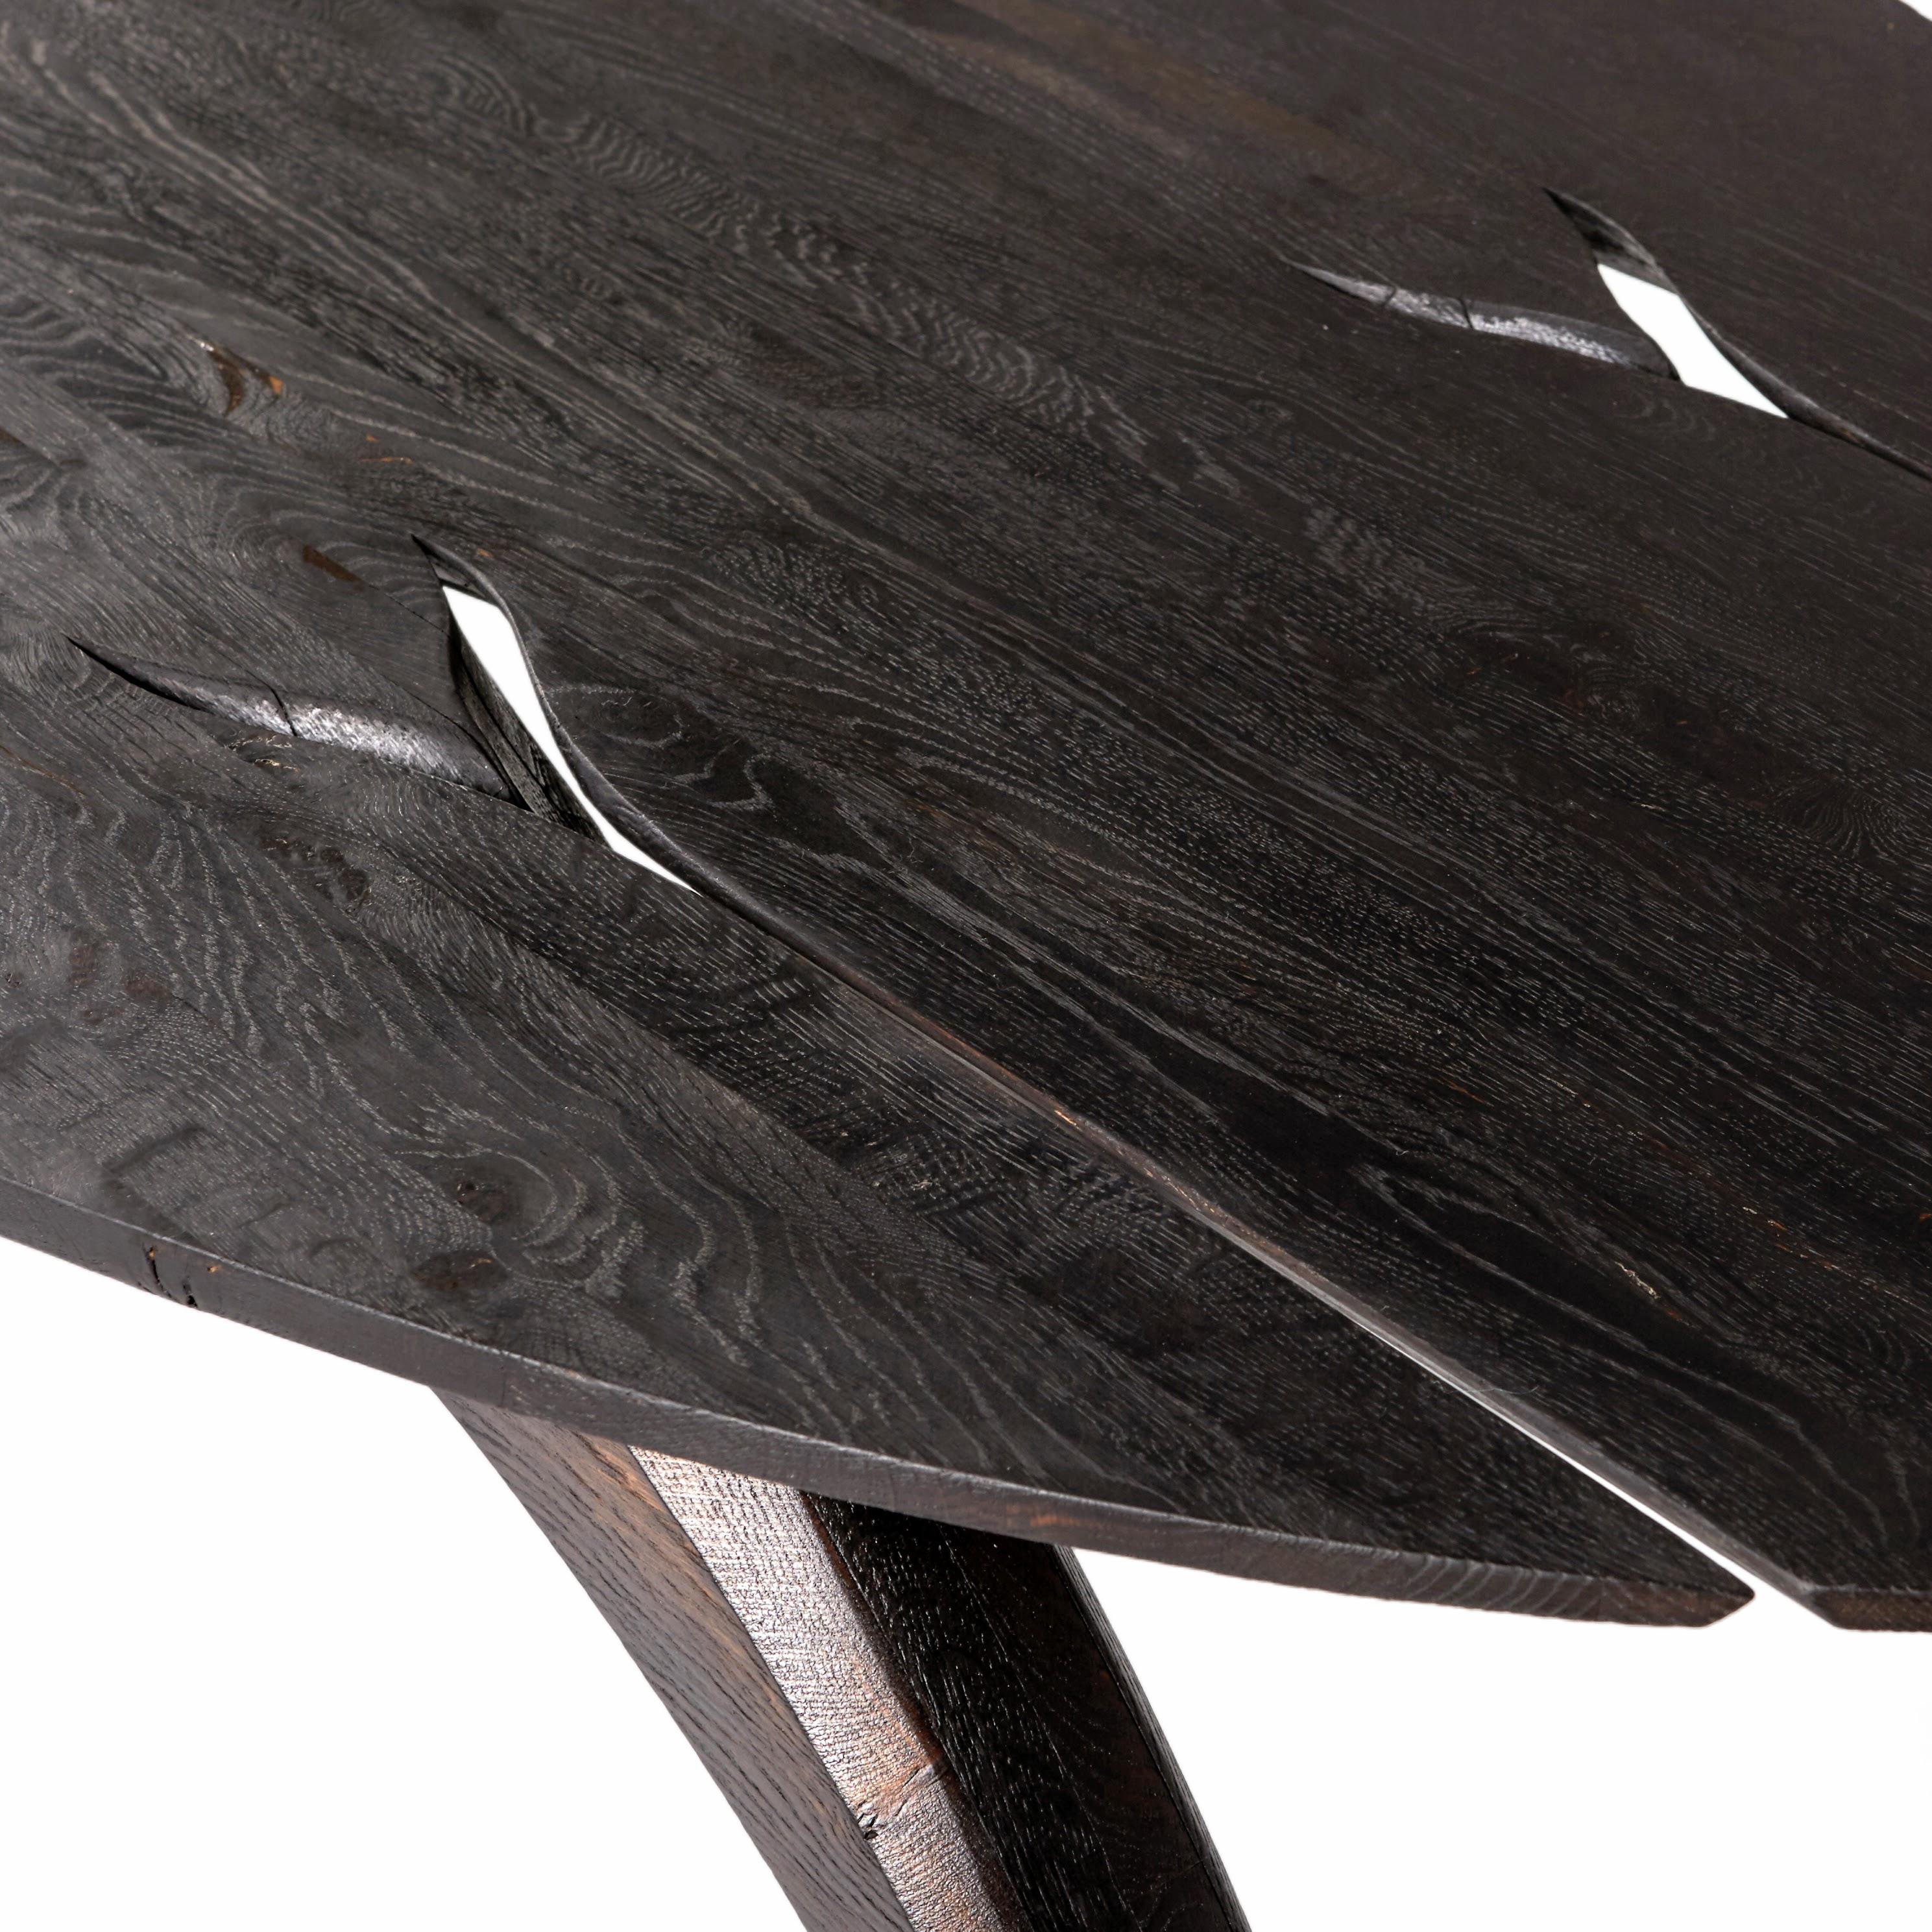 Ebonized 'Leap' table by Jonathan Field. Scorched legs & ebonized top. 